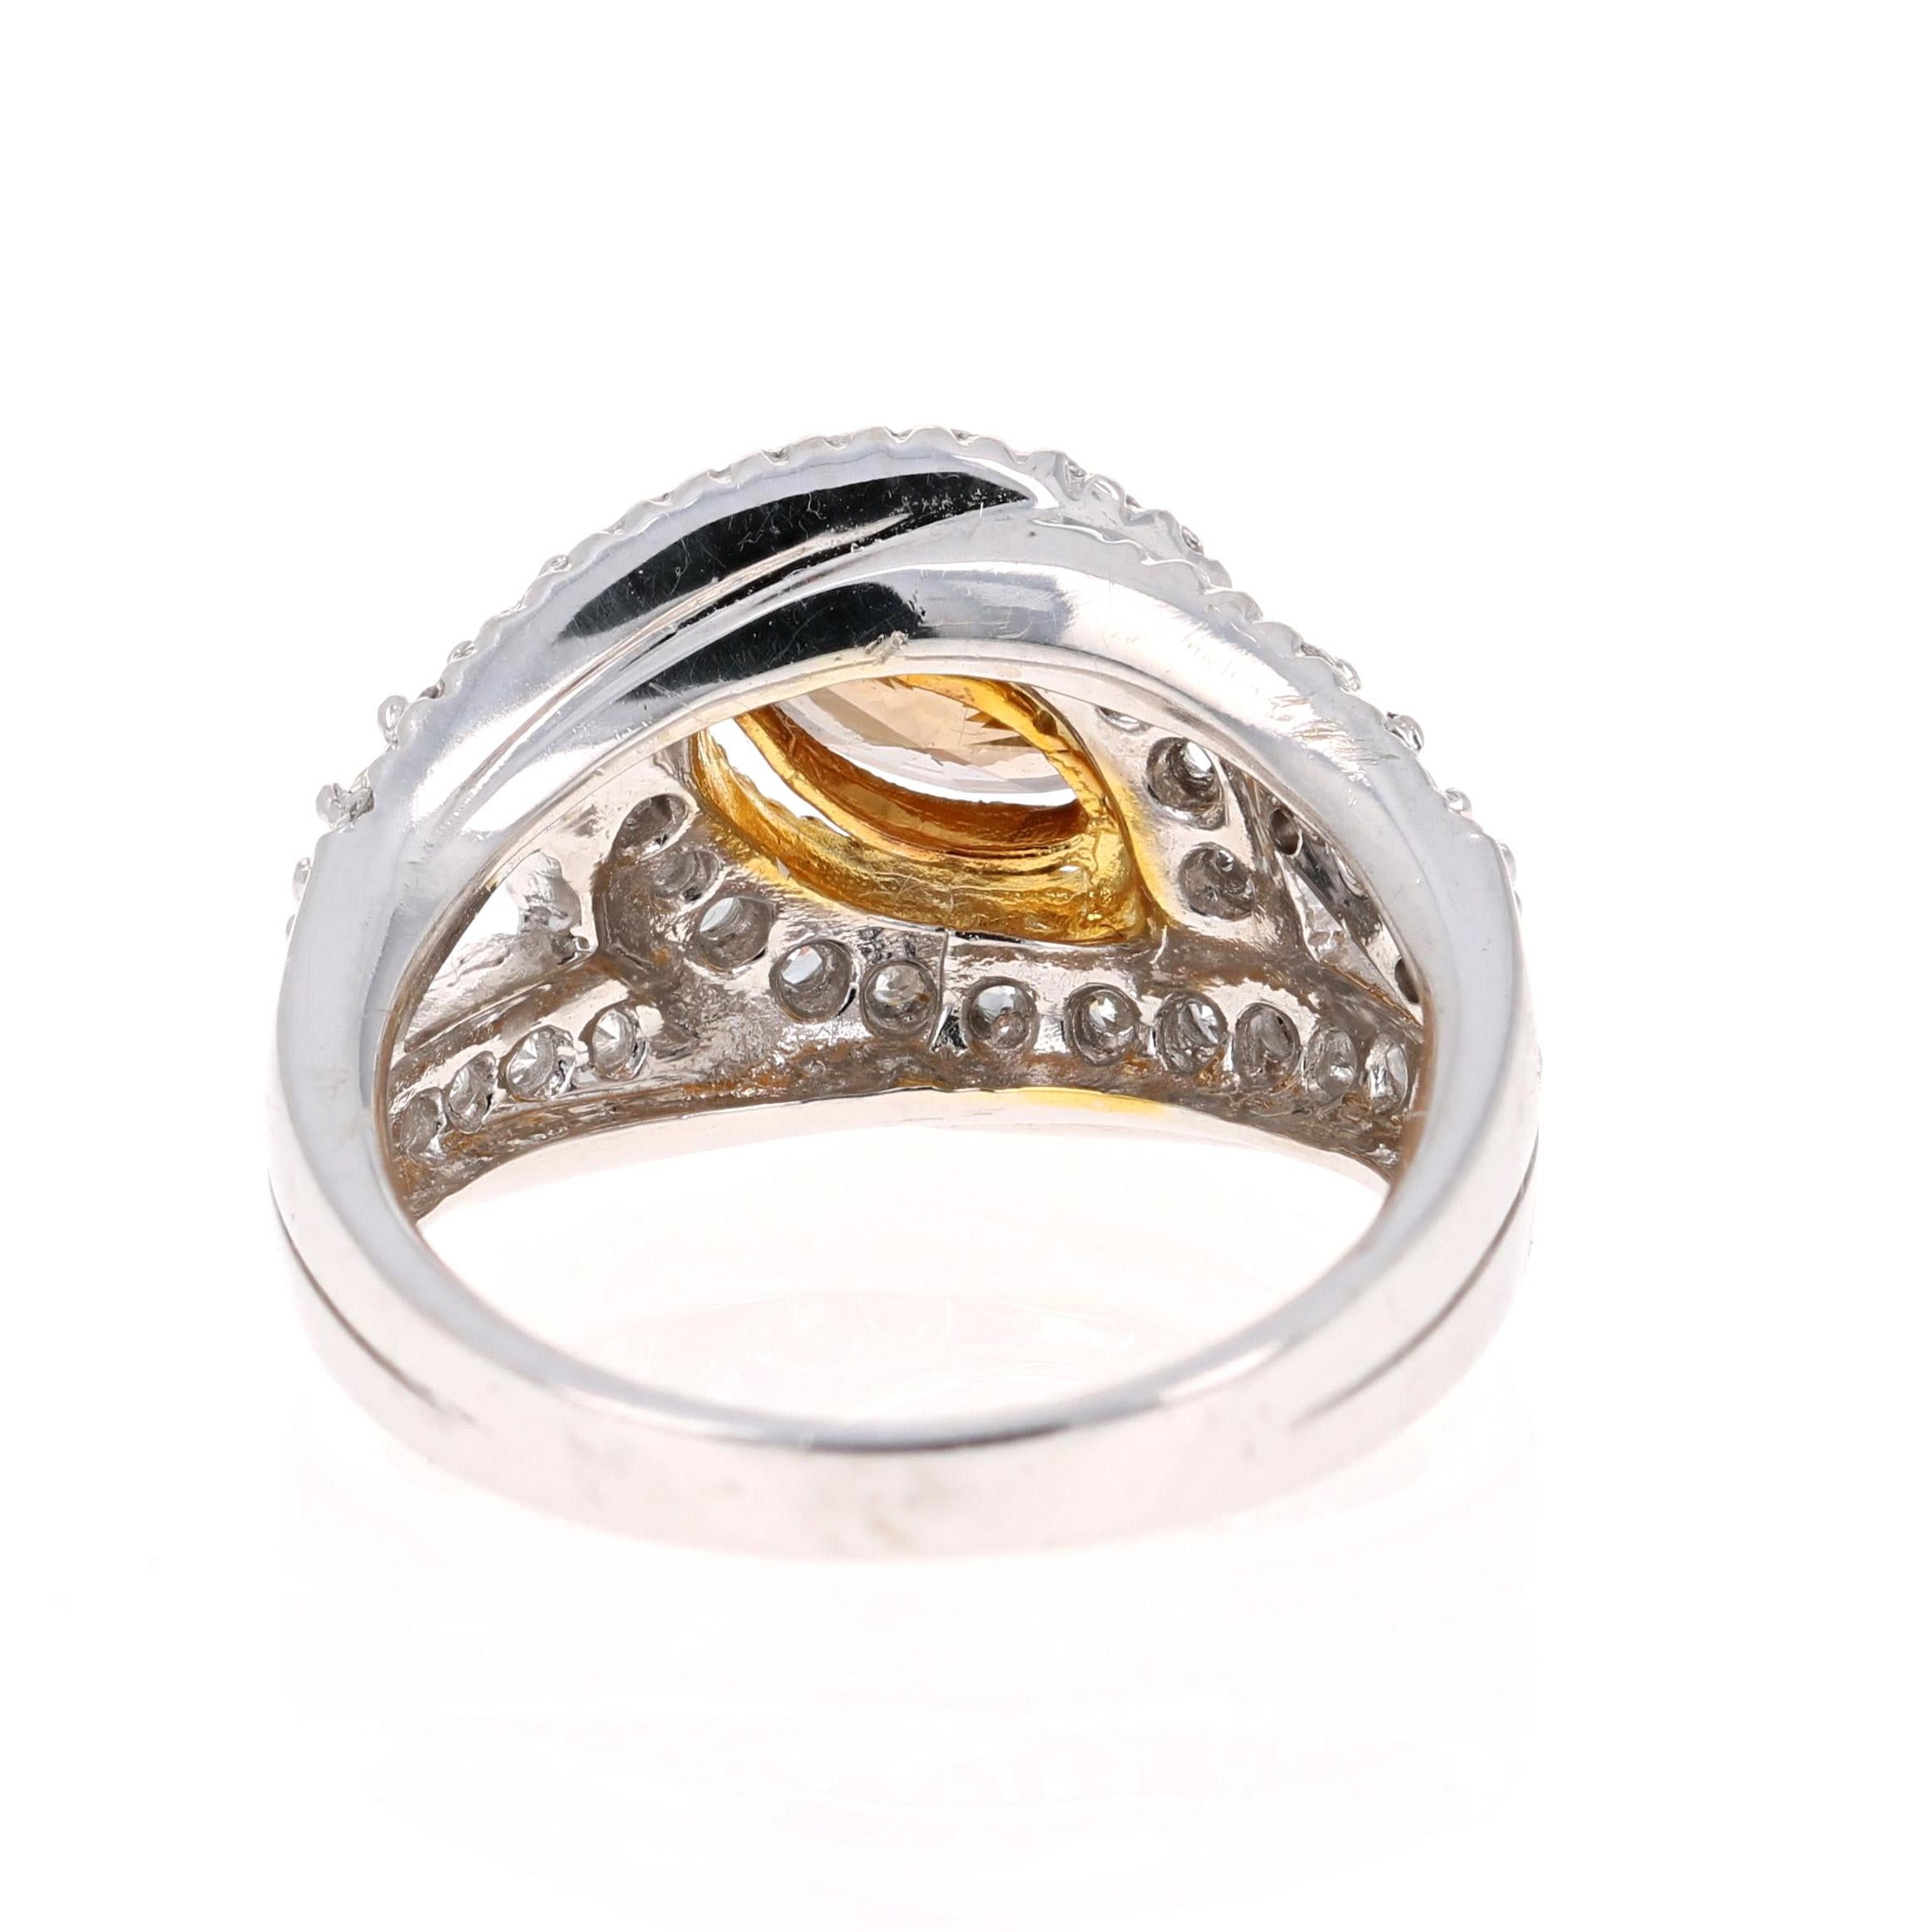 Modern 2.11 Carat Natural Fancy Brown Diamond Engagement Ring 14 Karat White Gold